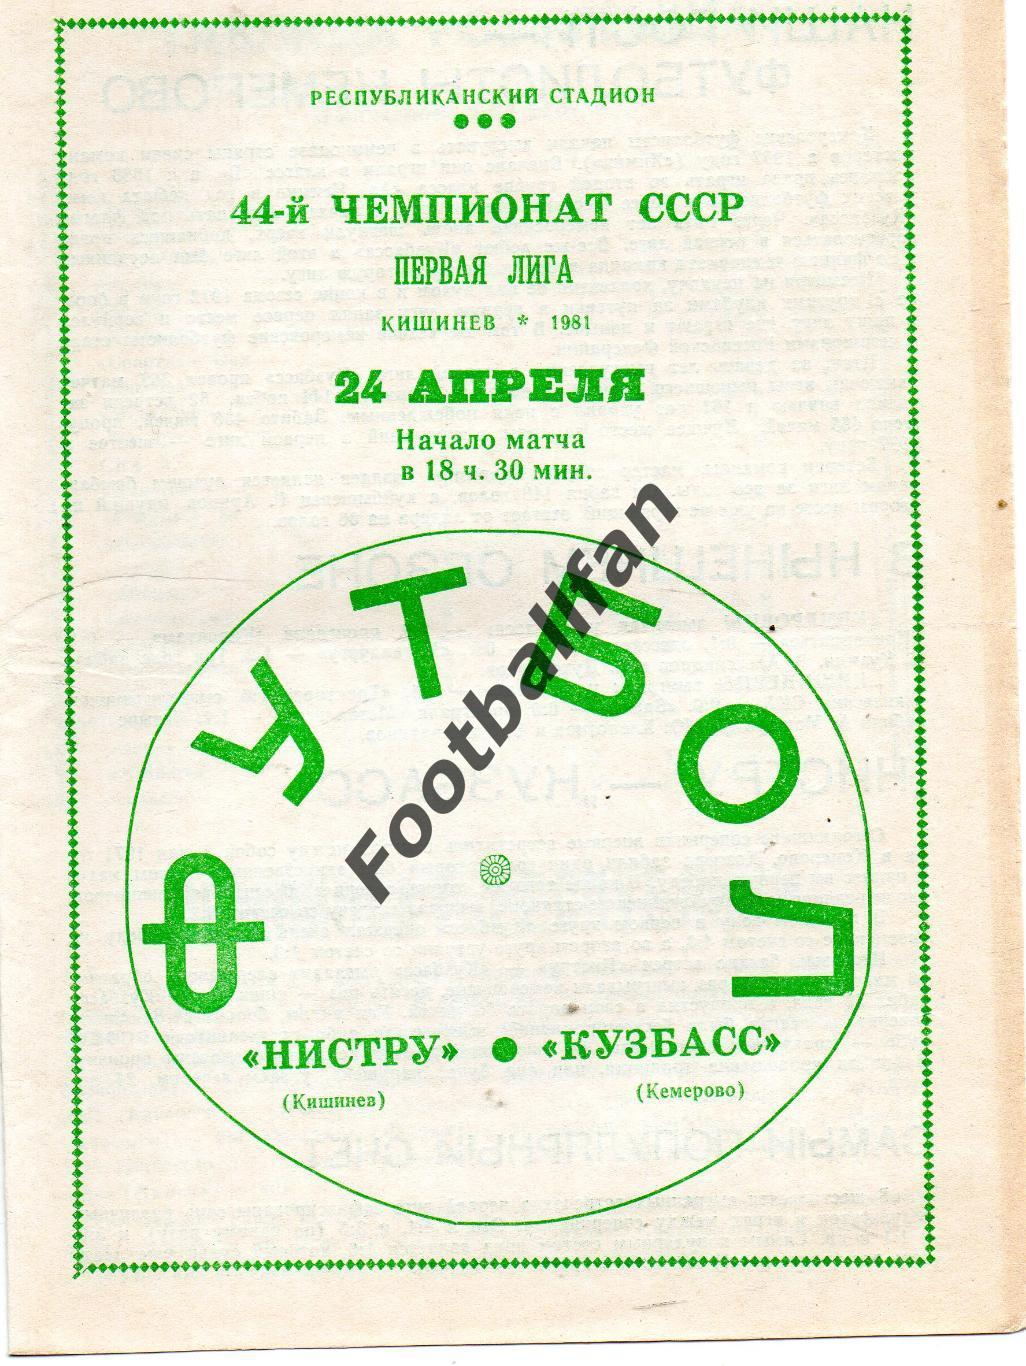 Нистру Кишинев - Кузбасс Кемерово 24.04.1981